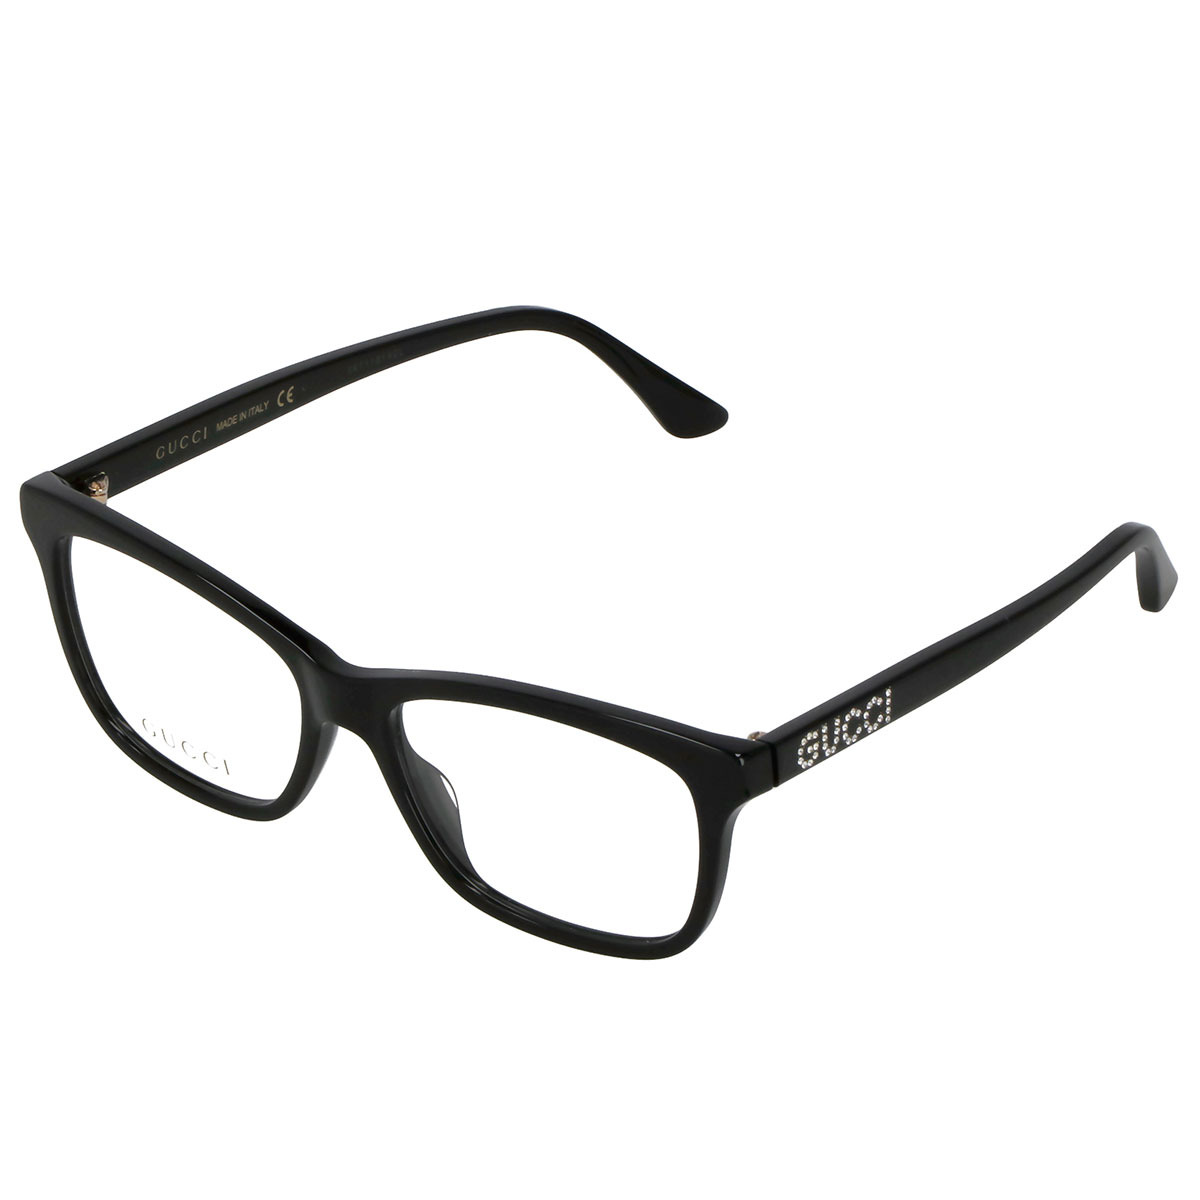 グッチ GUCCI オプティカルフレーム メガネ フレーム GG0731O-001 眼鏡 フレームのみ レディース ブラック